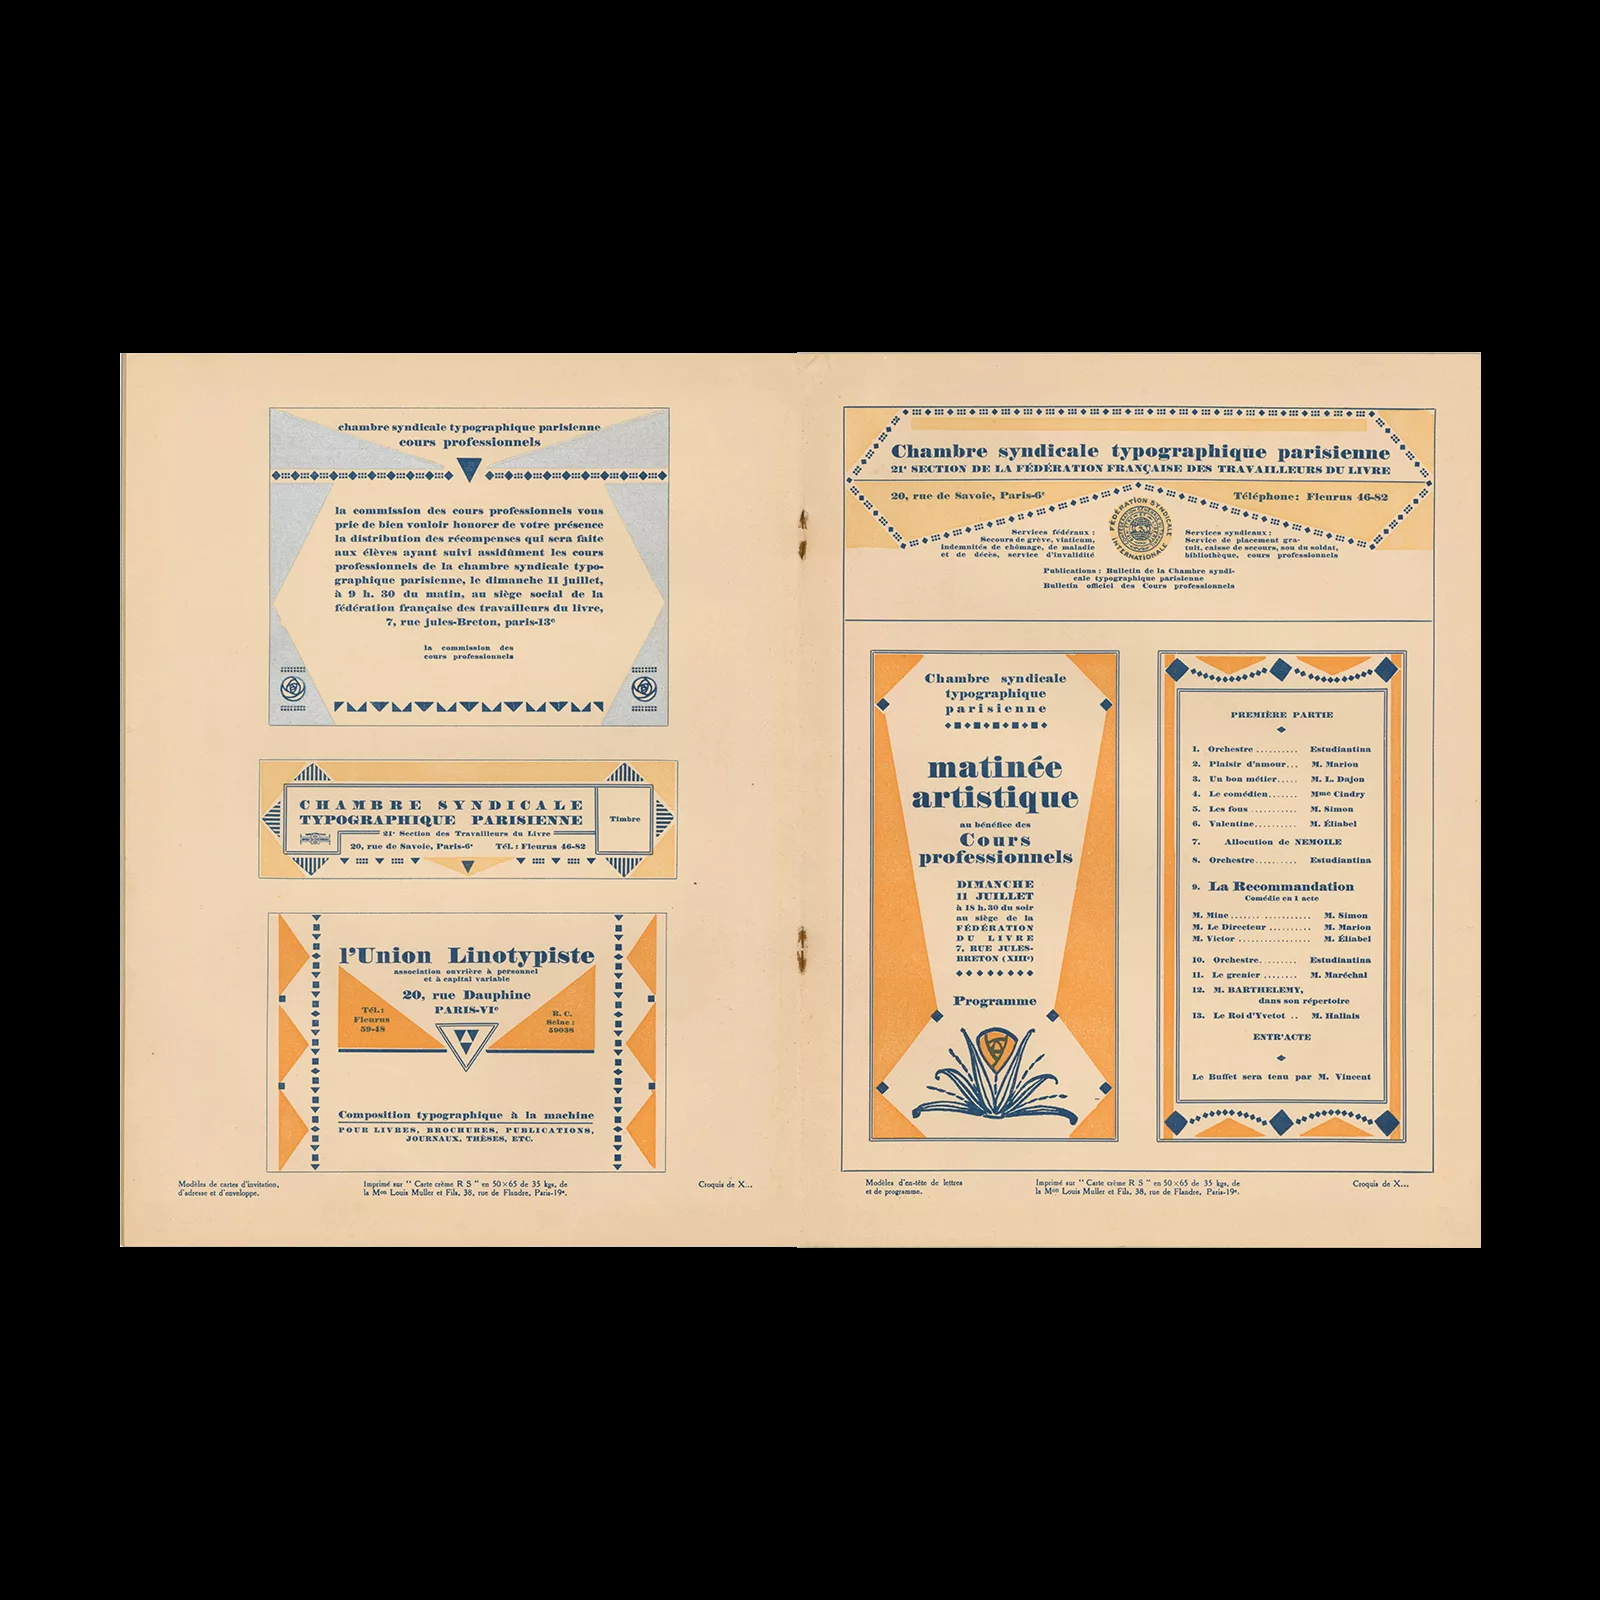 Bulletin officiel des Cours professionnels,Typographic Parisienne, 61, Octobre 1926